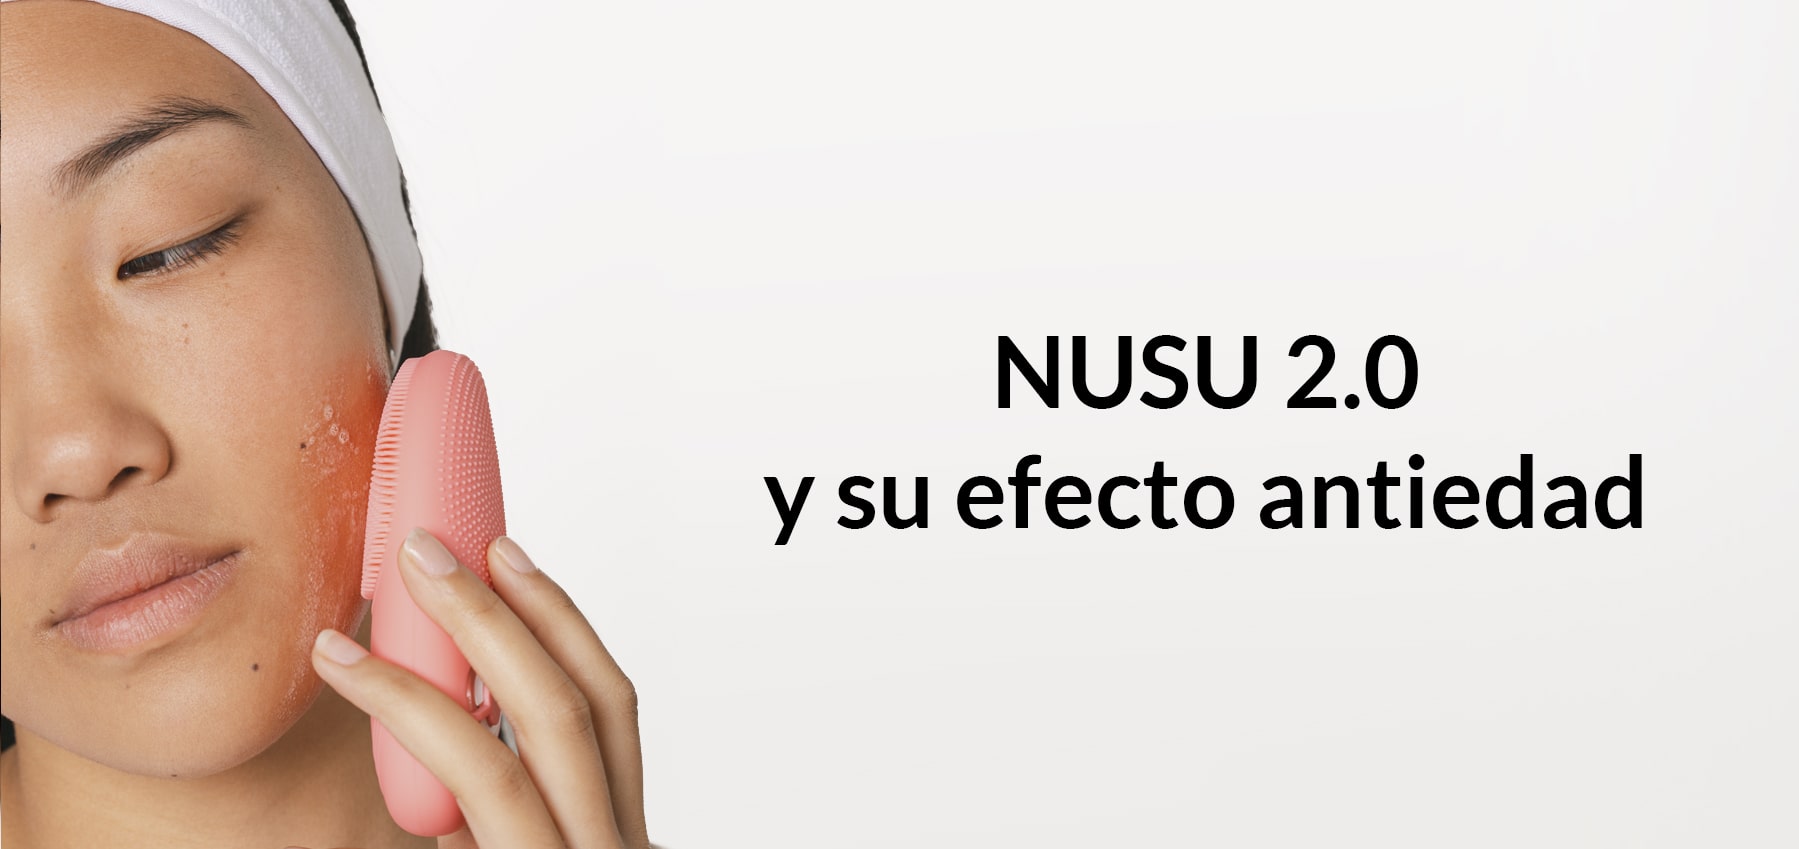 NUSU 2.0 aumenta el efecto antiedad de tus cosméticos